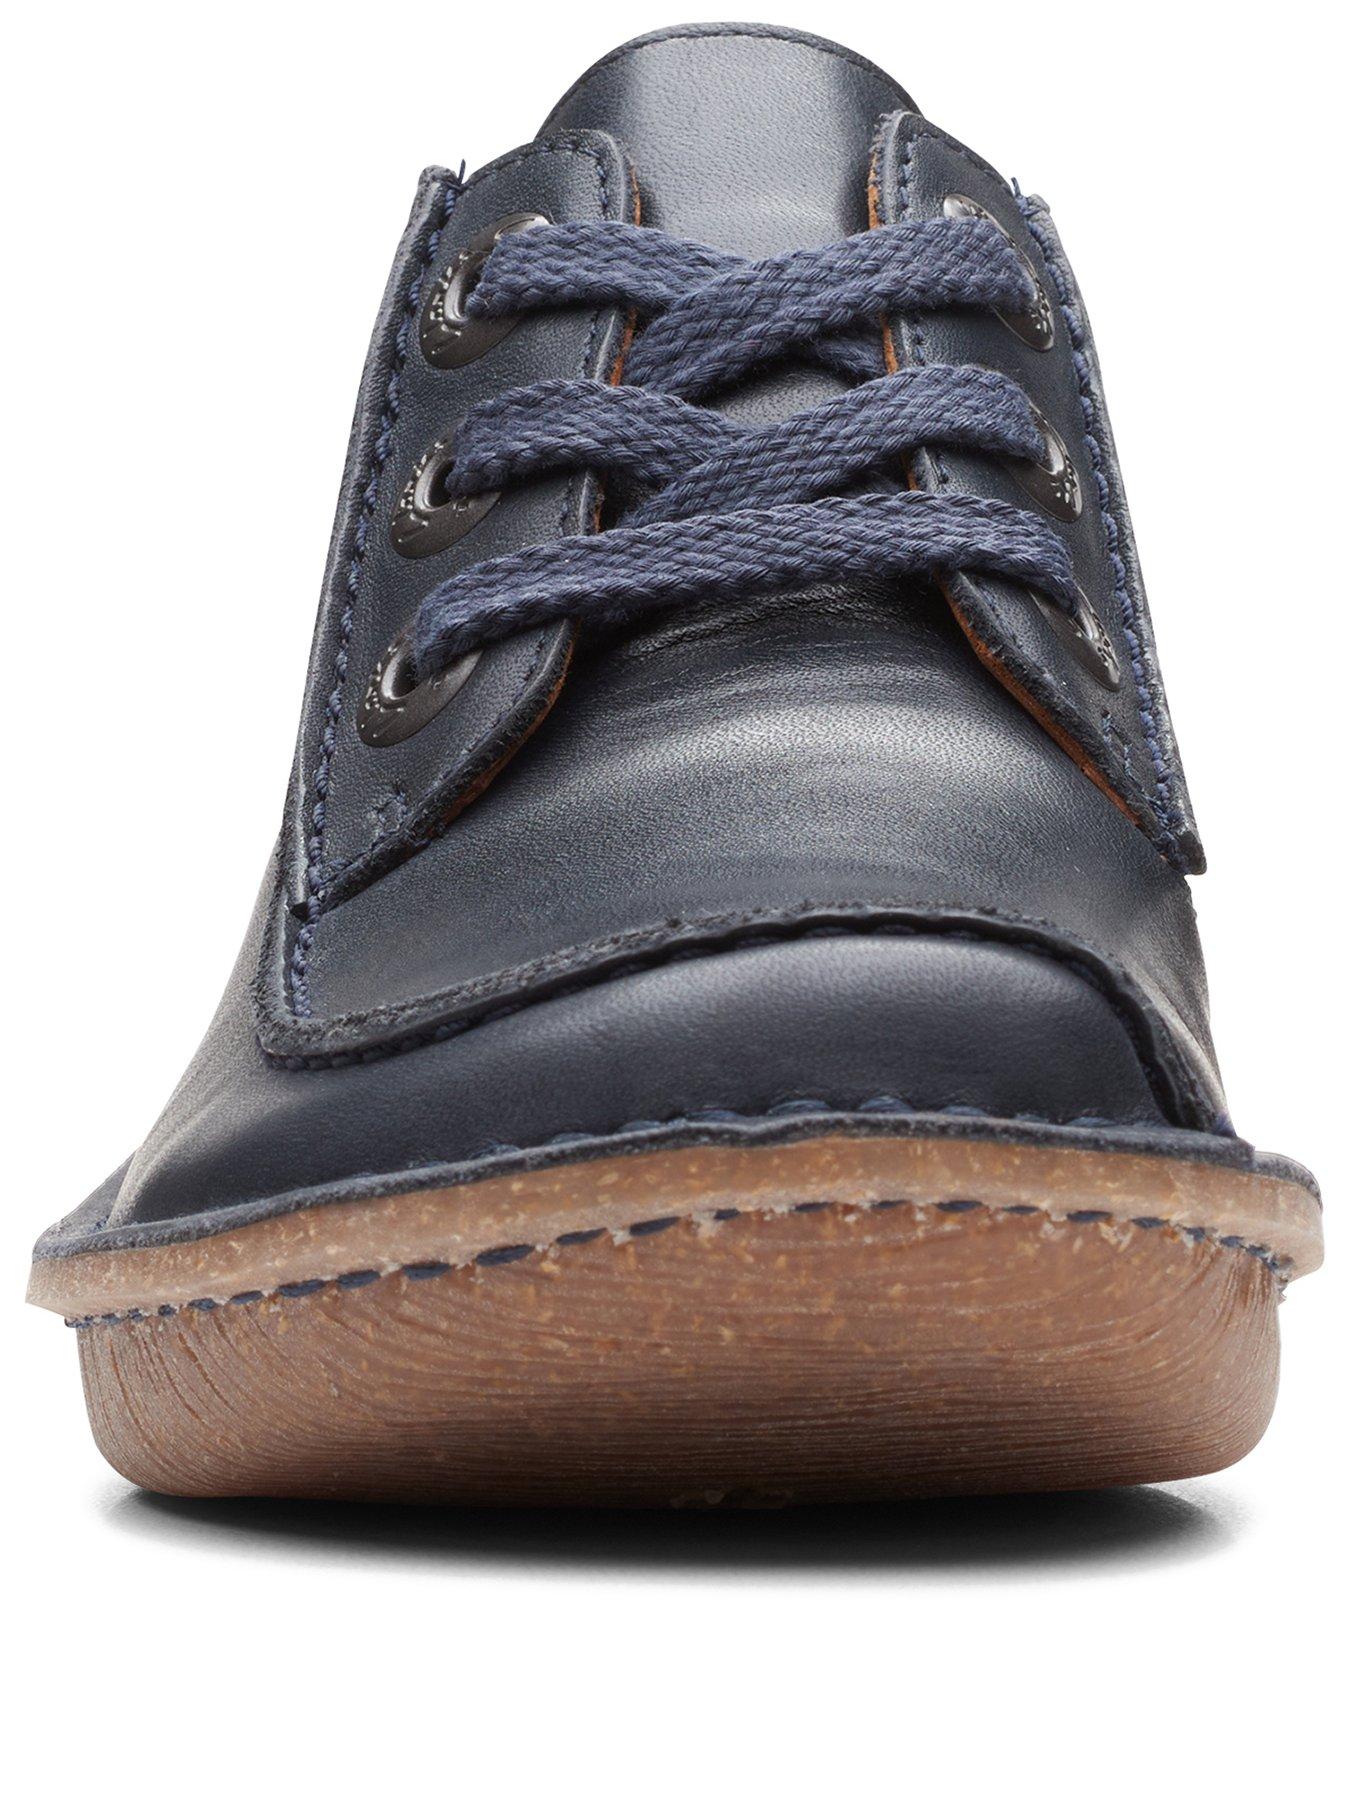 Indflydelsesrig videnskabelig menneskemængde Clarks Funny Dream Shoes - Navy Leather | very.co.uk